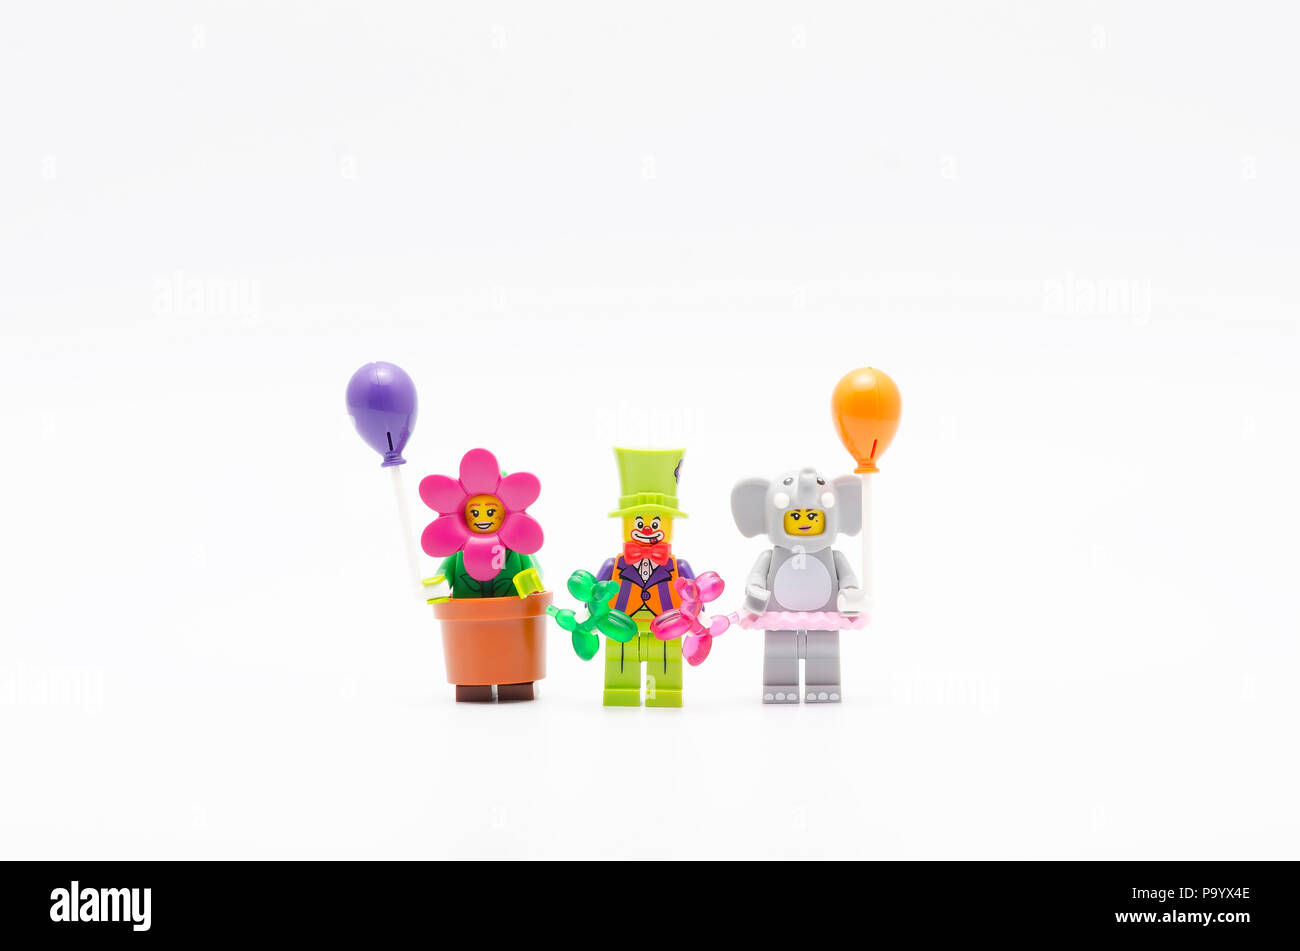 Lego Figur Blumentopf Mädchen, Elefant girl und Party Clown mit Ballon ab  Serie 18. Lego Minifiguren sind von der Lego Gruppe hergestellt  Stockfotografie - Alamy